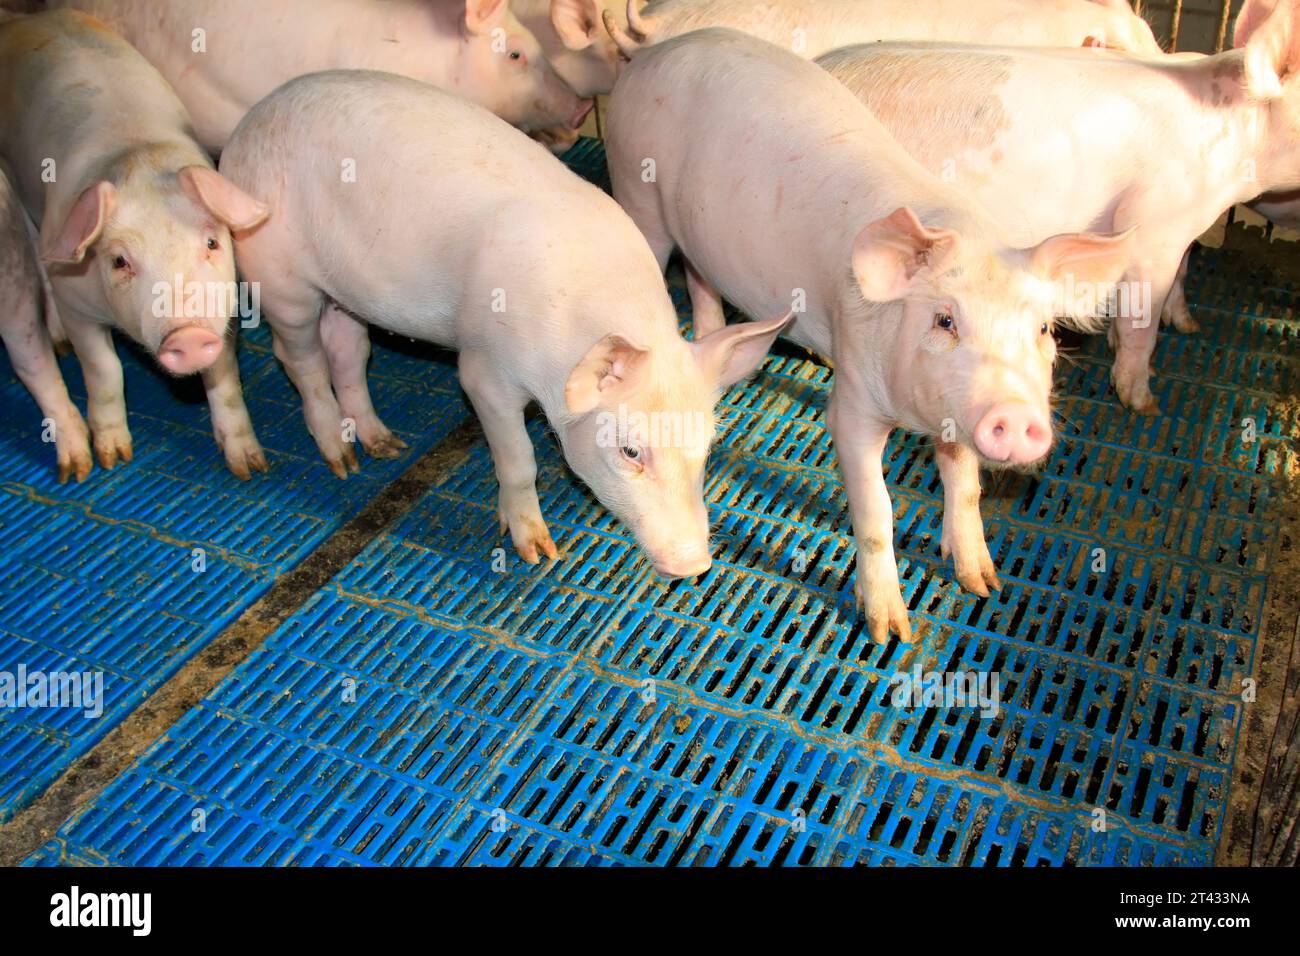 Porcs maigres dans une ferme, gros plan de la photo Banque D'Images